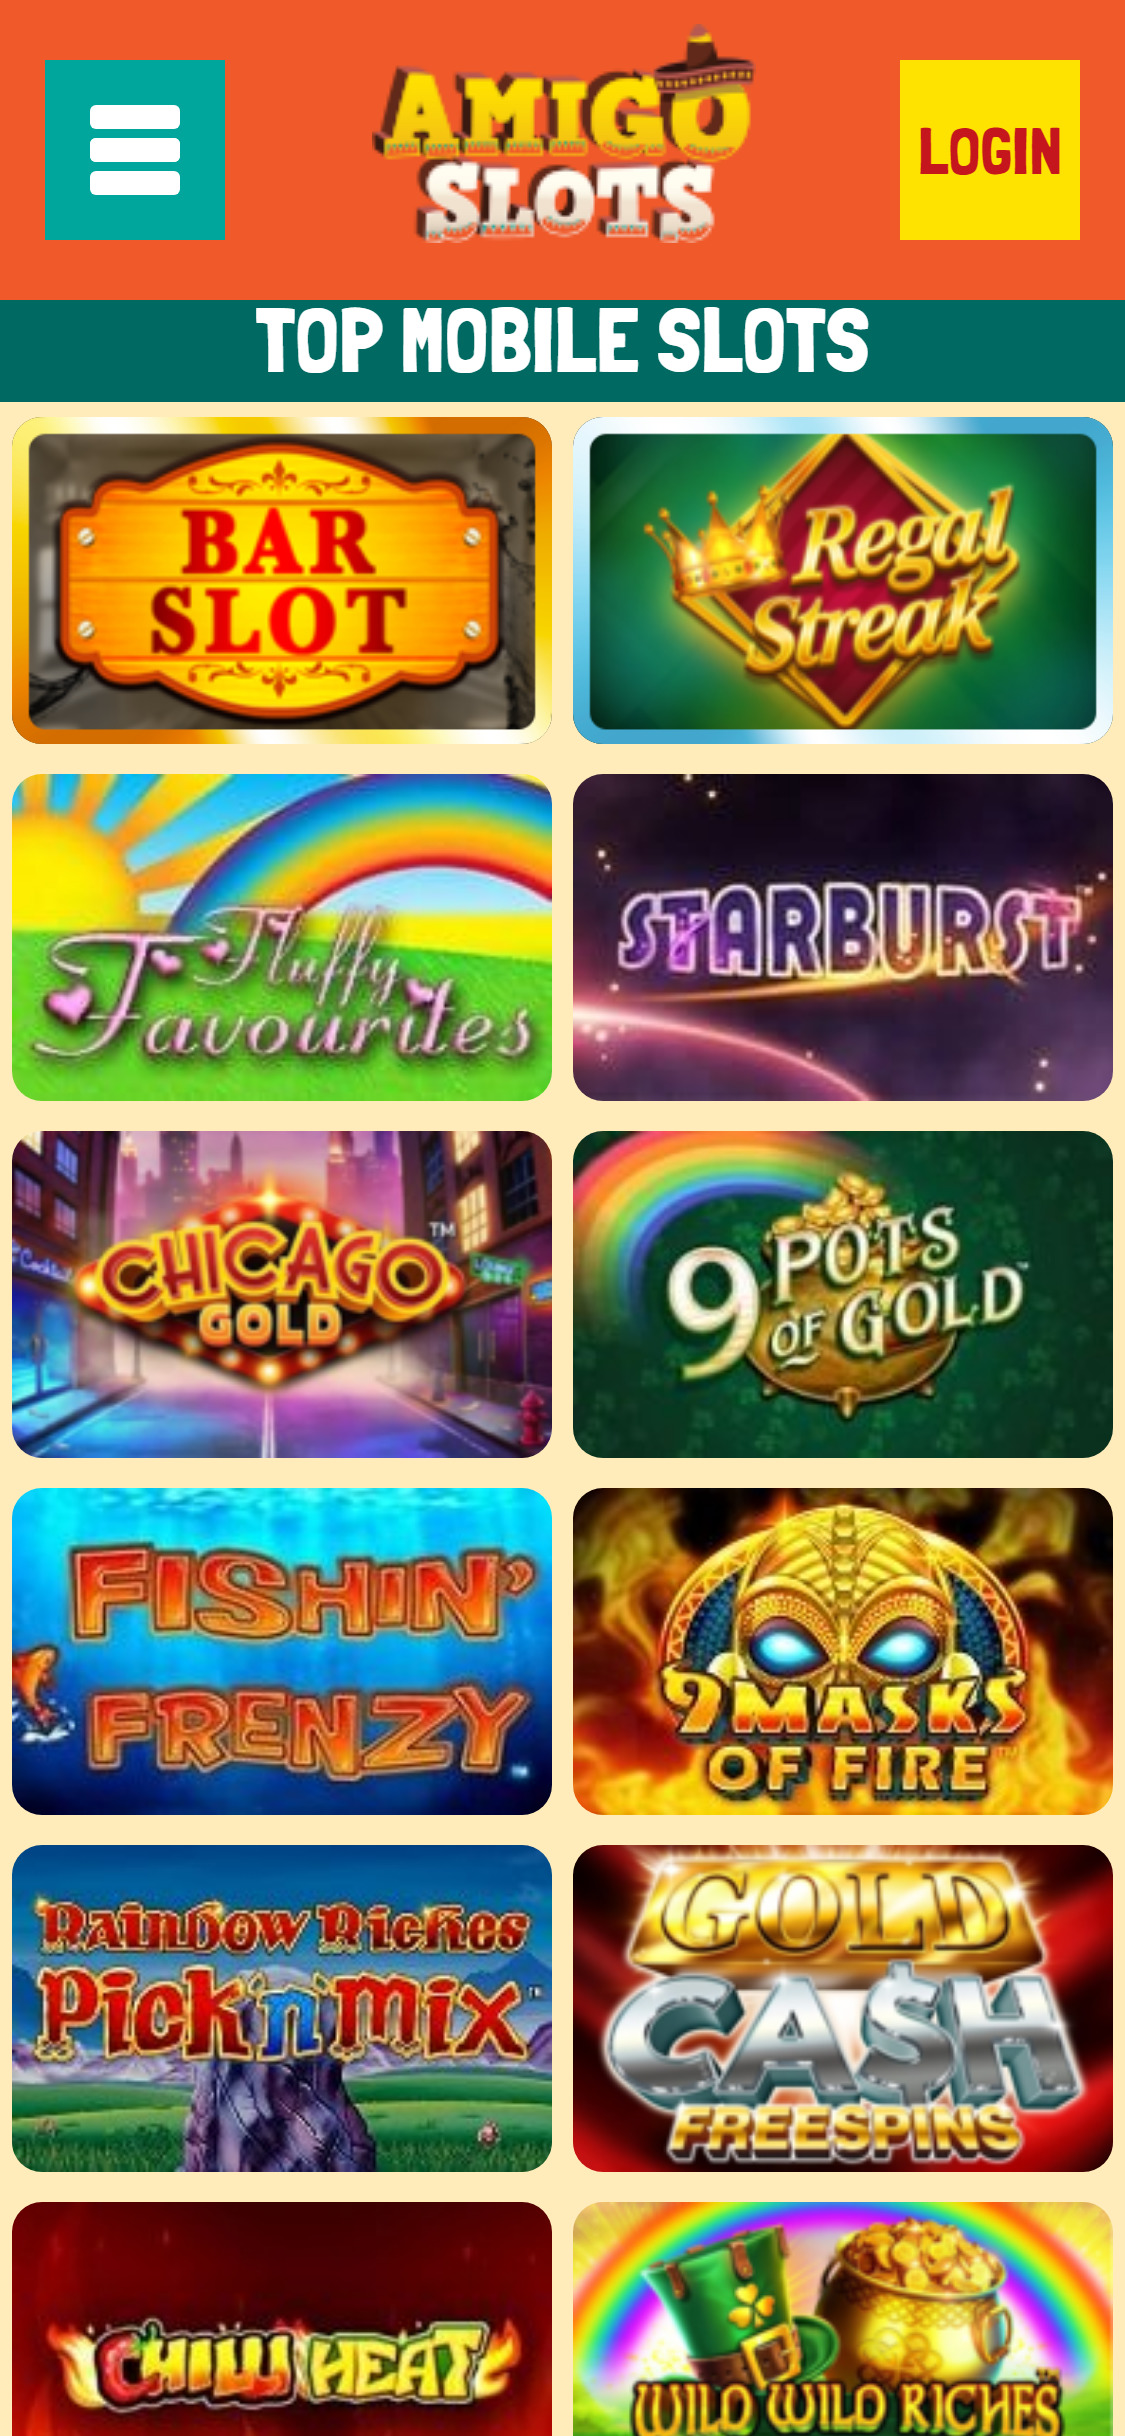 Amigo Slots Casino Mobile Games Review